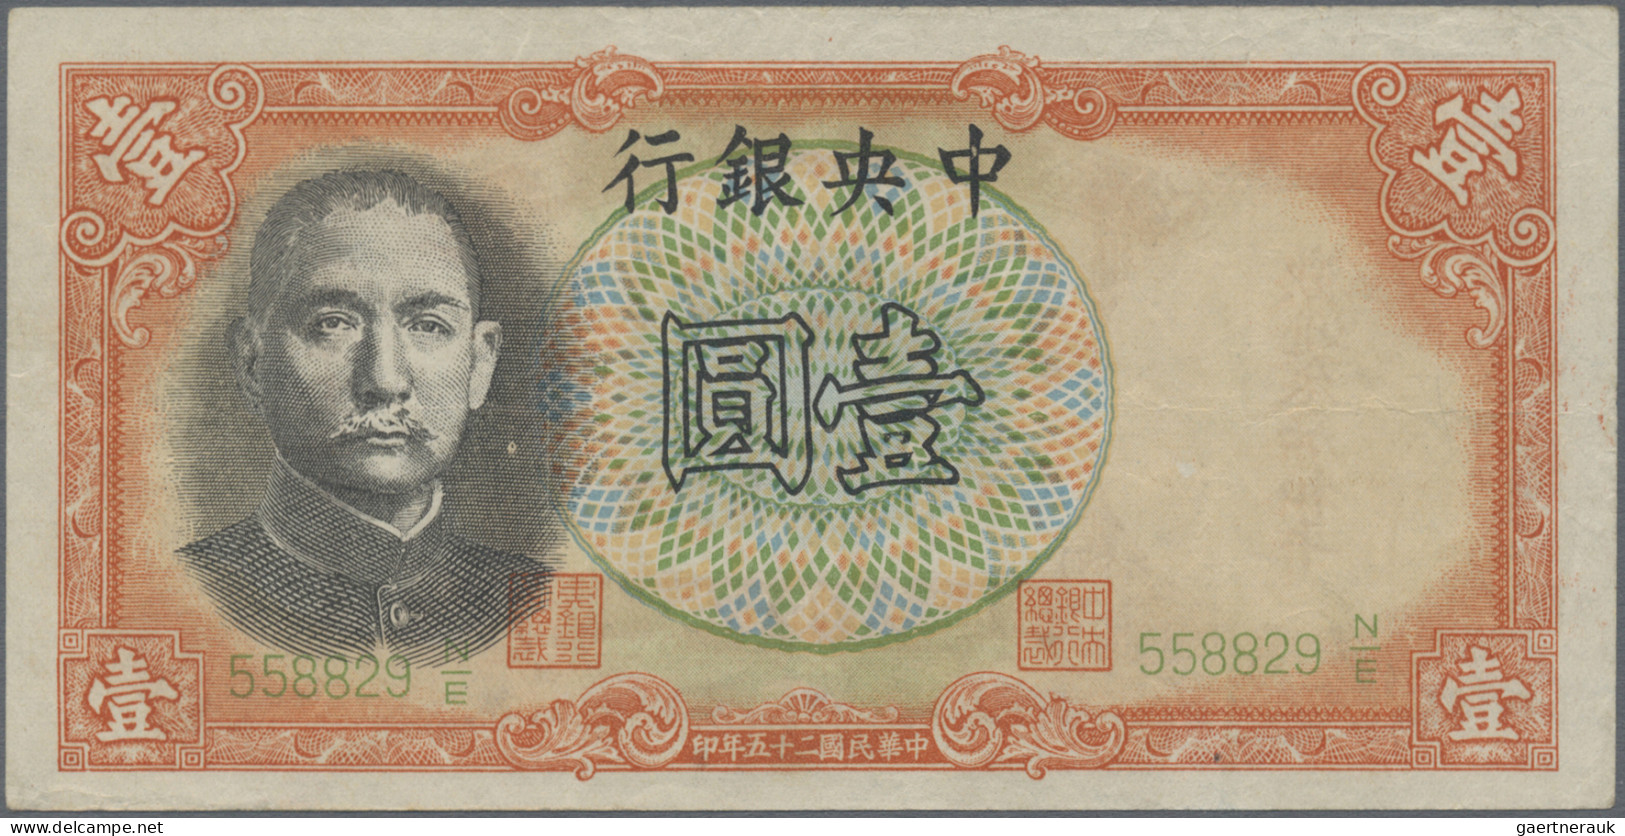 China: Central Bank Of China – Pass For Nanking Military Government, 1 Yuan 1936 - China